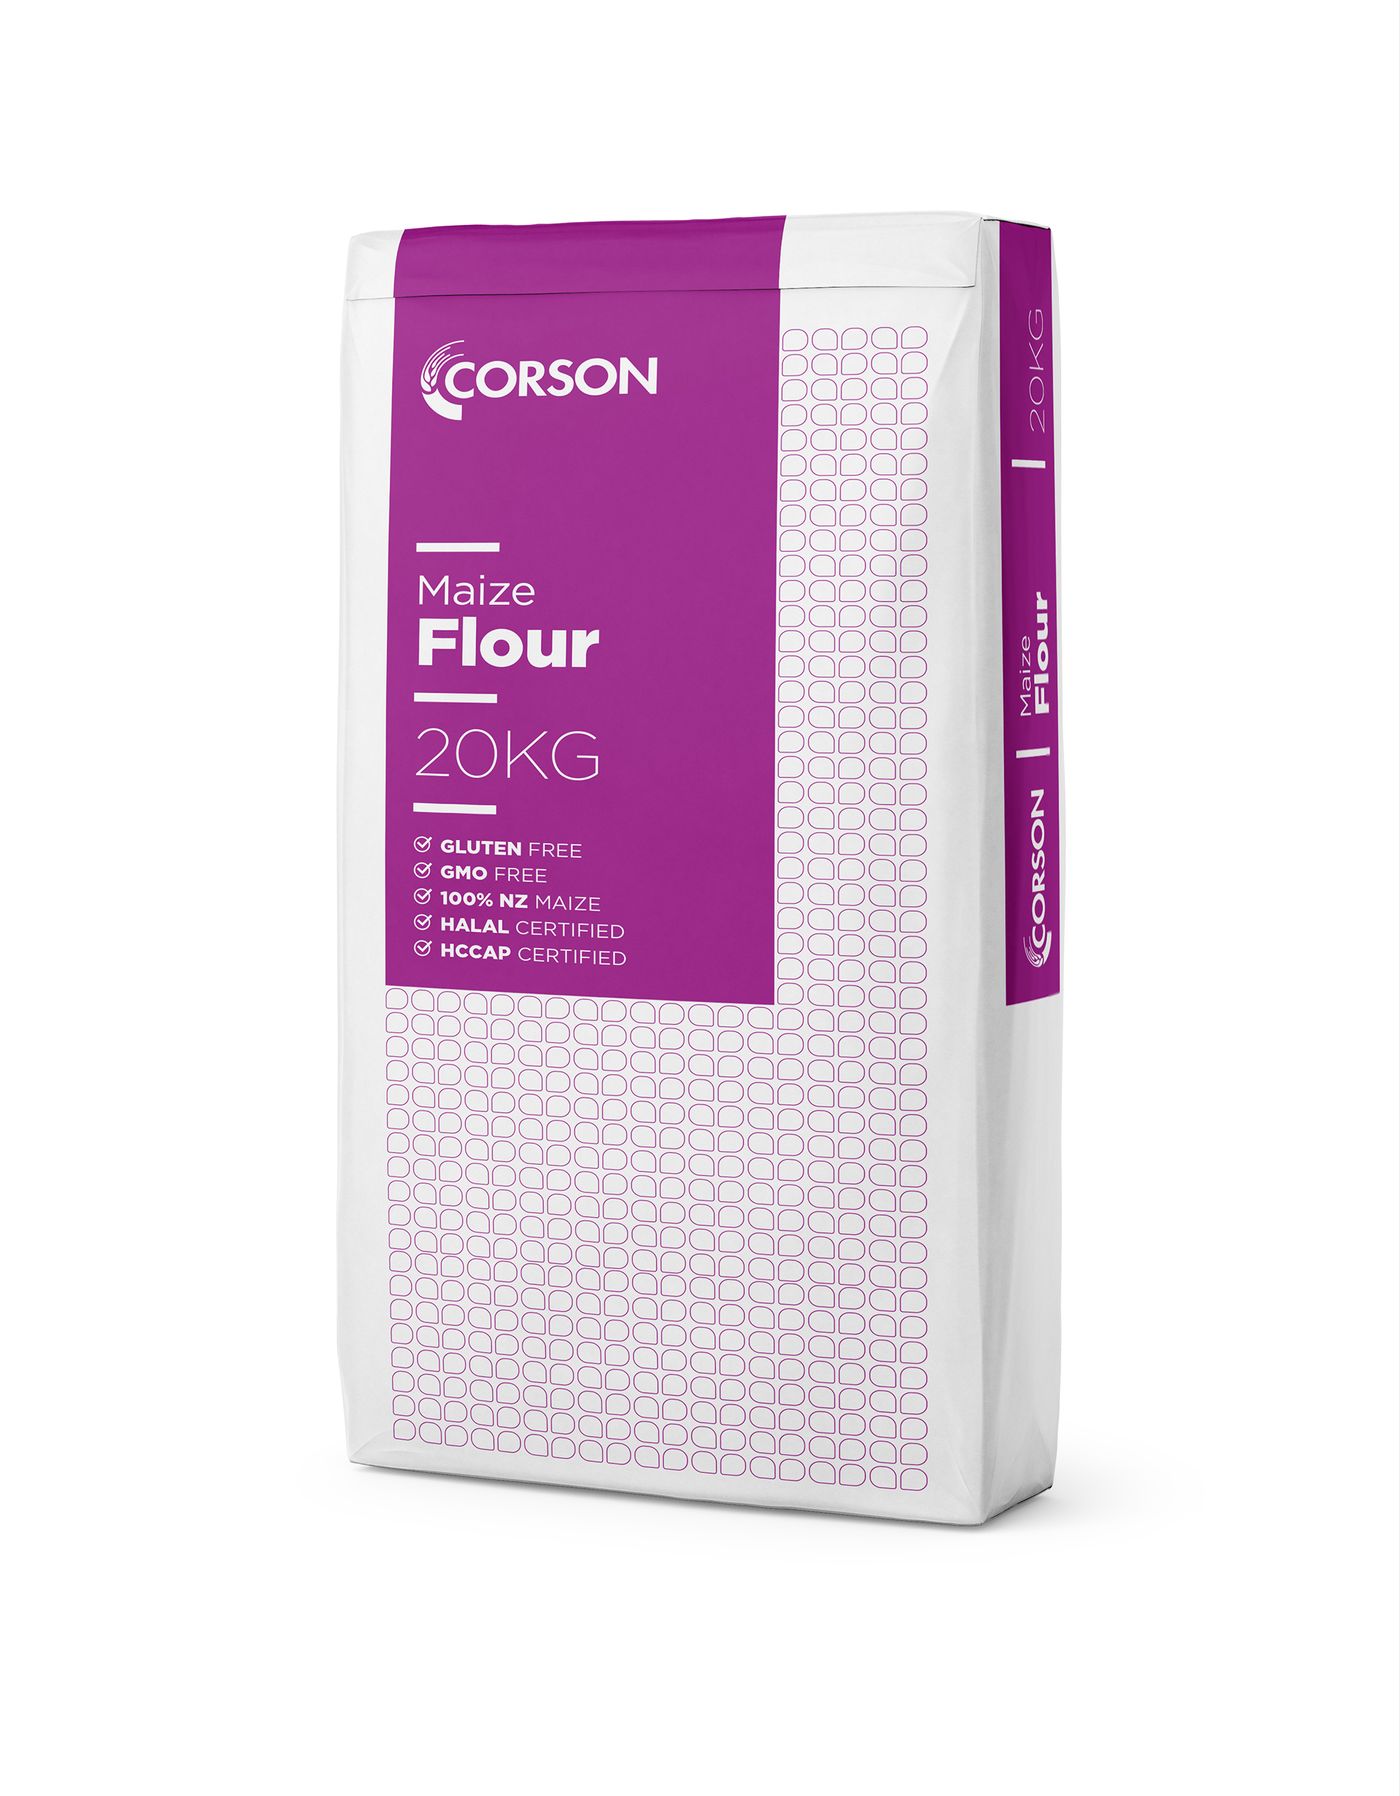 Corson Maize Flour 20kg bag